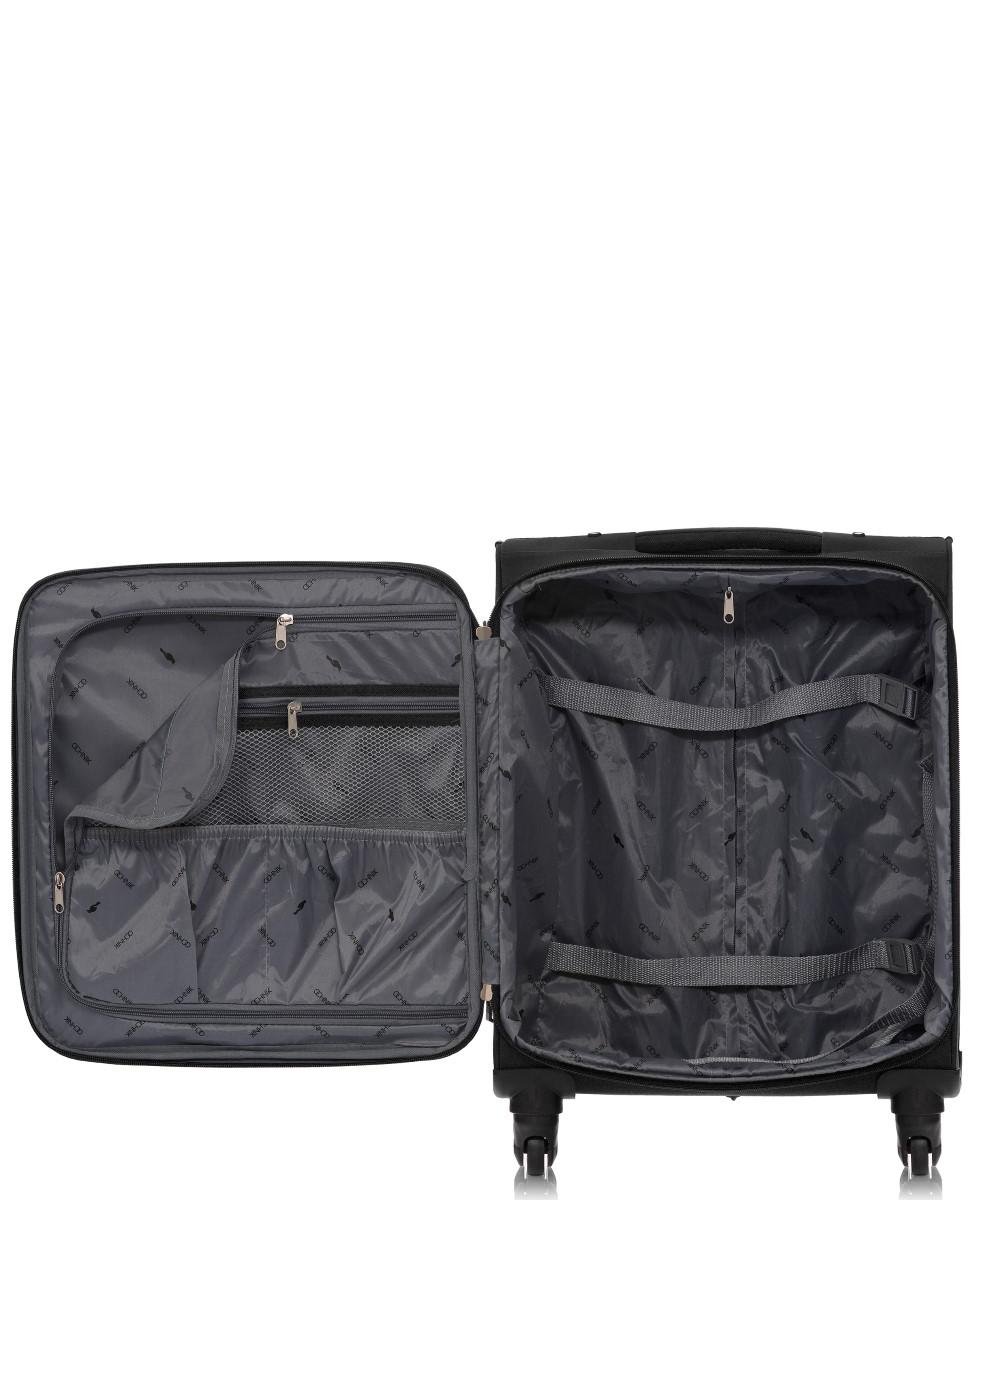 Mała walizka na kółkach WALNY-0017-99-18